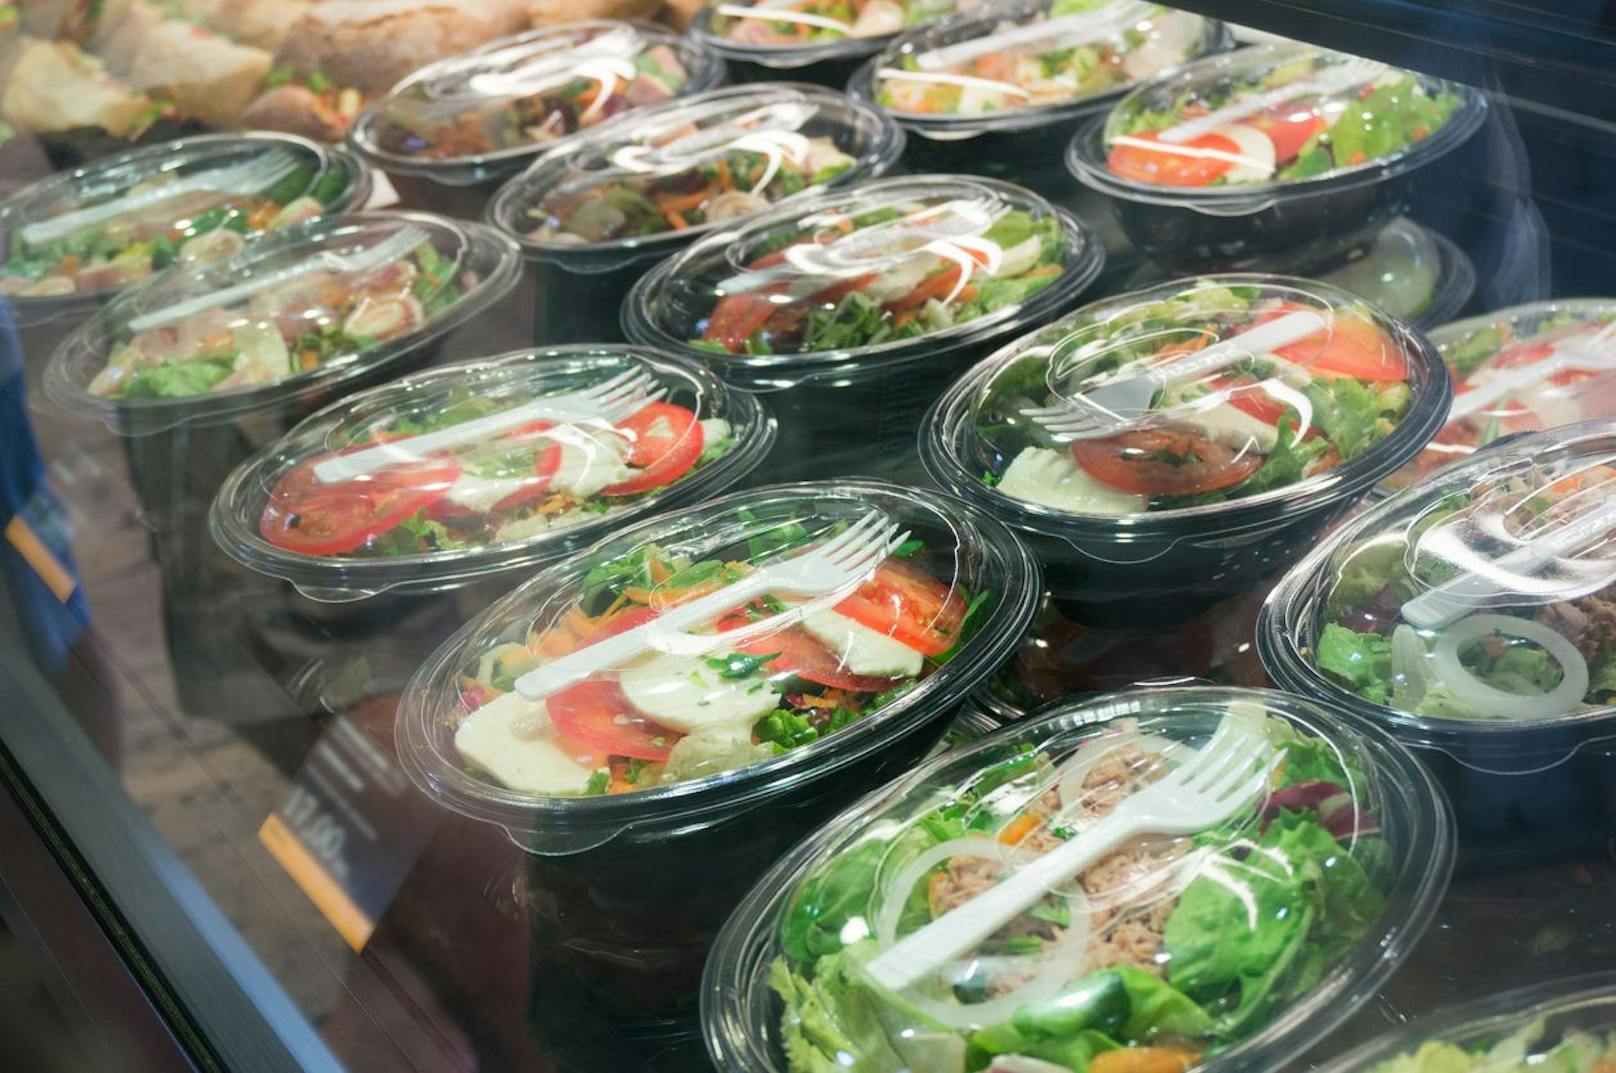 Fertig-Salat scheint eine gesunde und schnelle Lösung zu sein, wenn man keine Zeit hat. Aber für eine keimfreie und zeitsparende Lösung kannst du dir deinen grünen Mix im Vorhinein in einem Einmachglas vorbereiten.